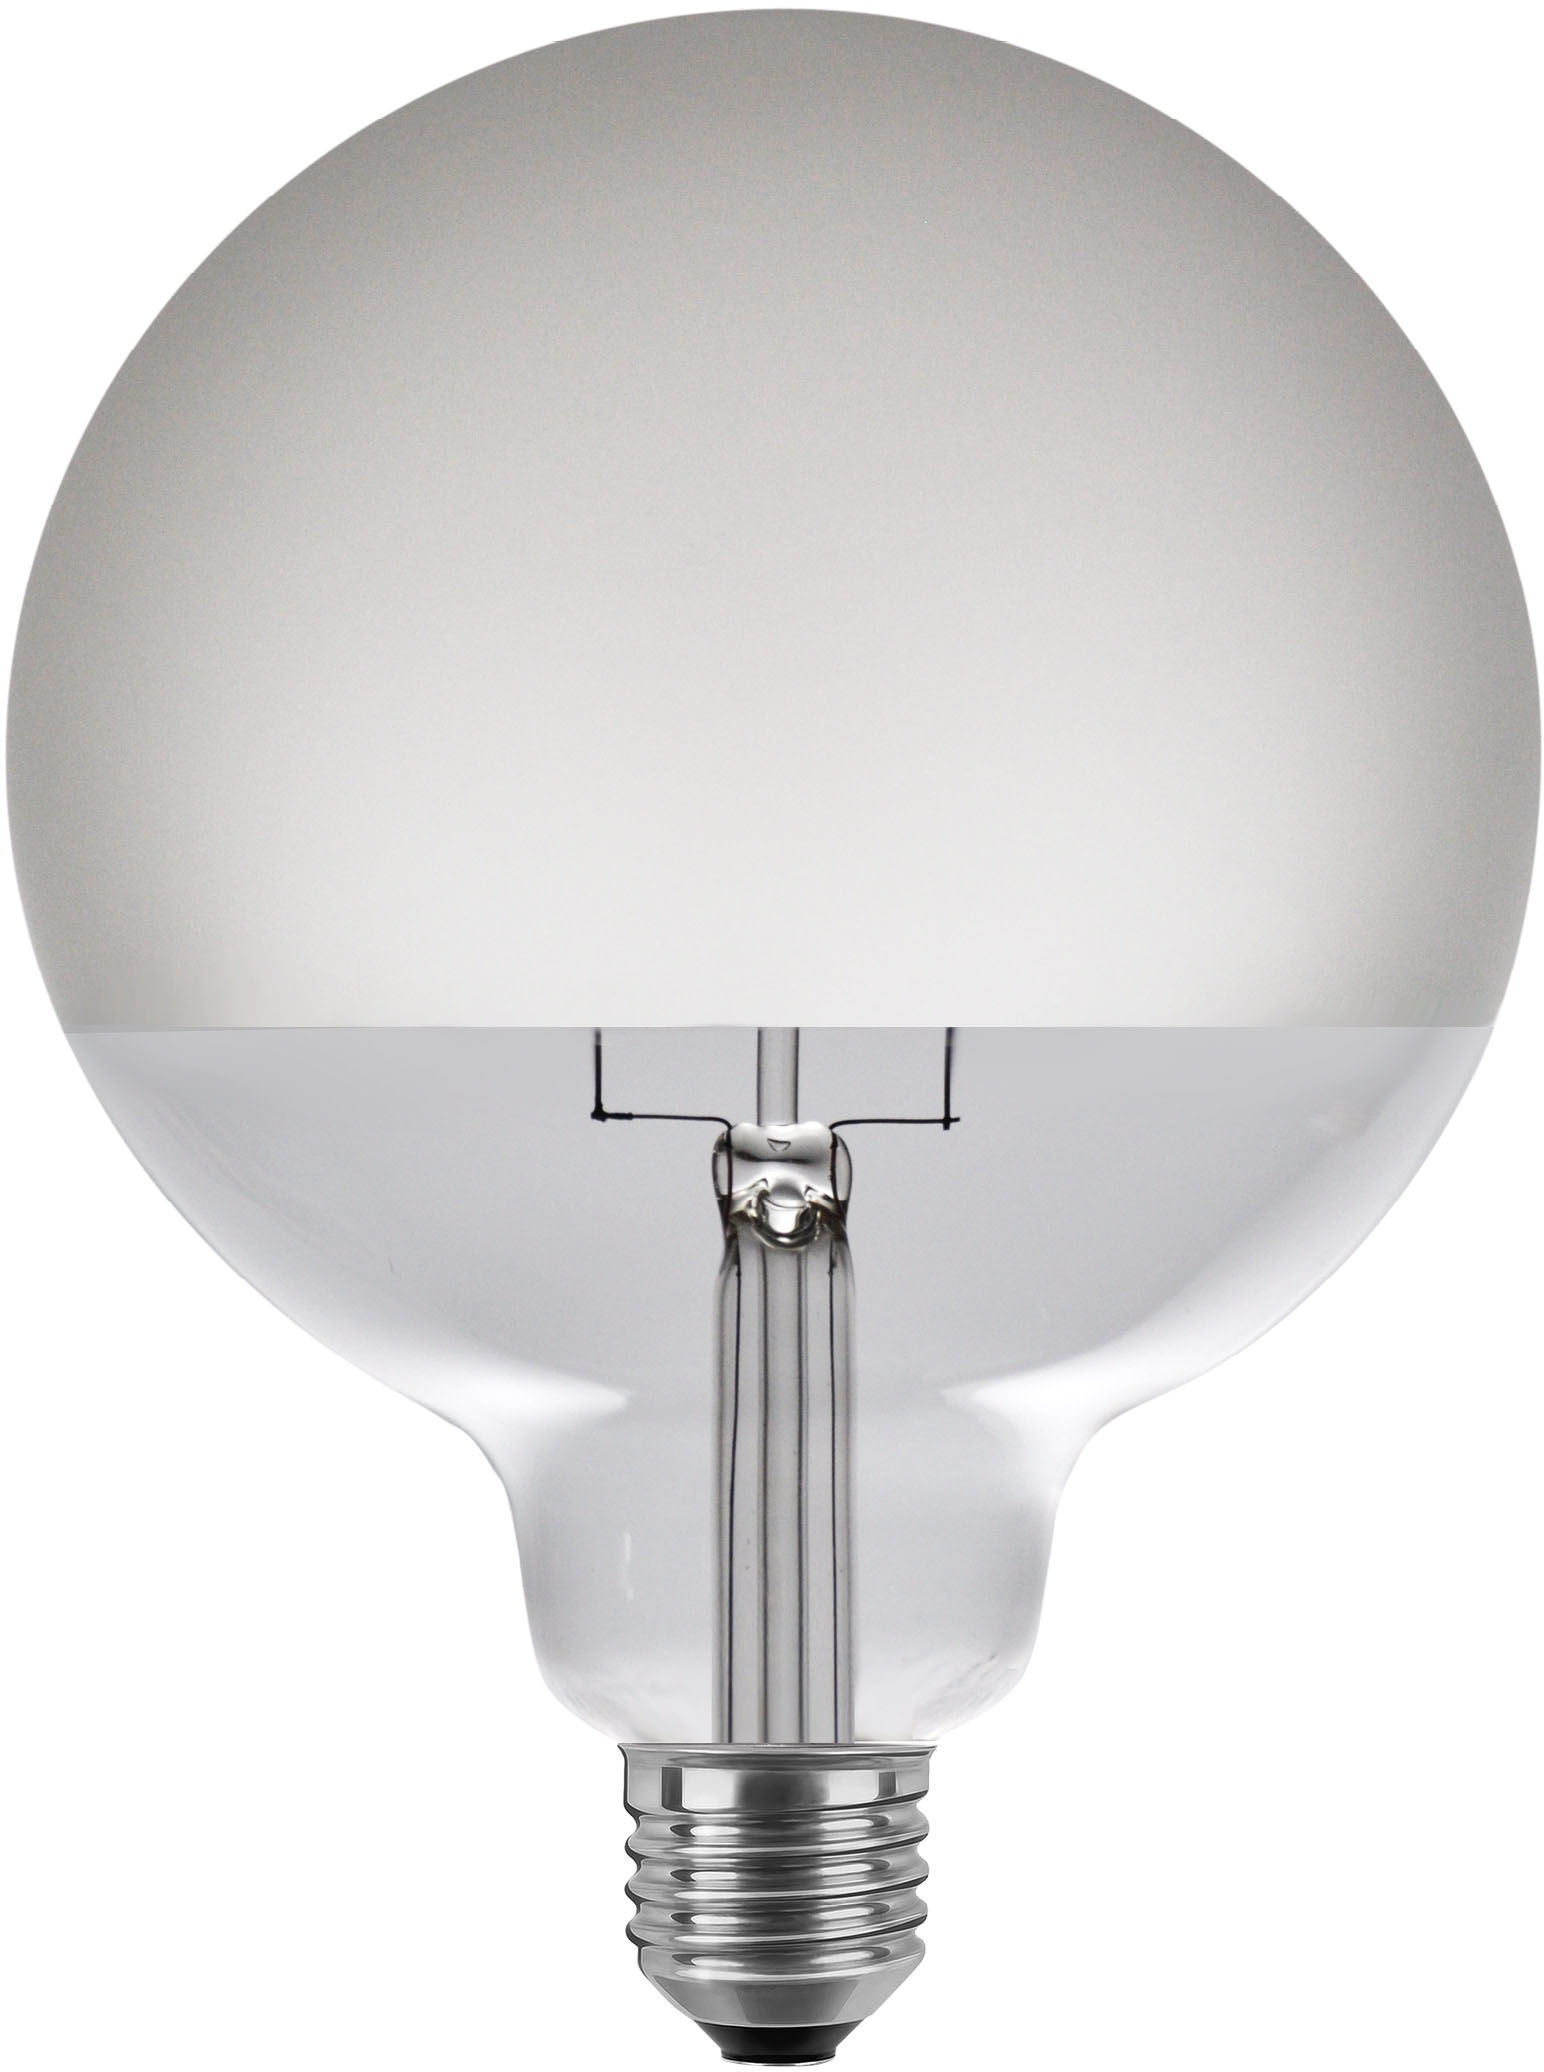 SEGULA LED-Leuchtmittel »LED Globe 125 Half Moon matt«, E27, Warmweiß, dimmbar, E27, Globe 125 Half Moon, matt, 2700K